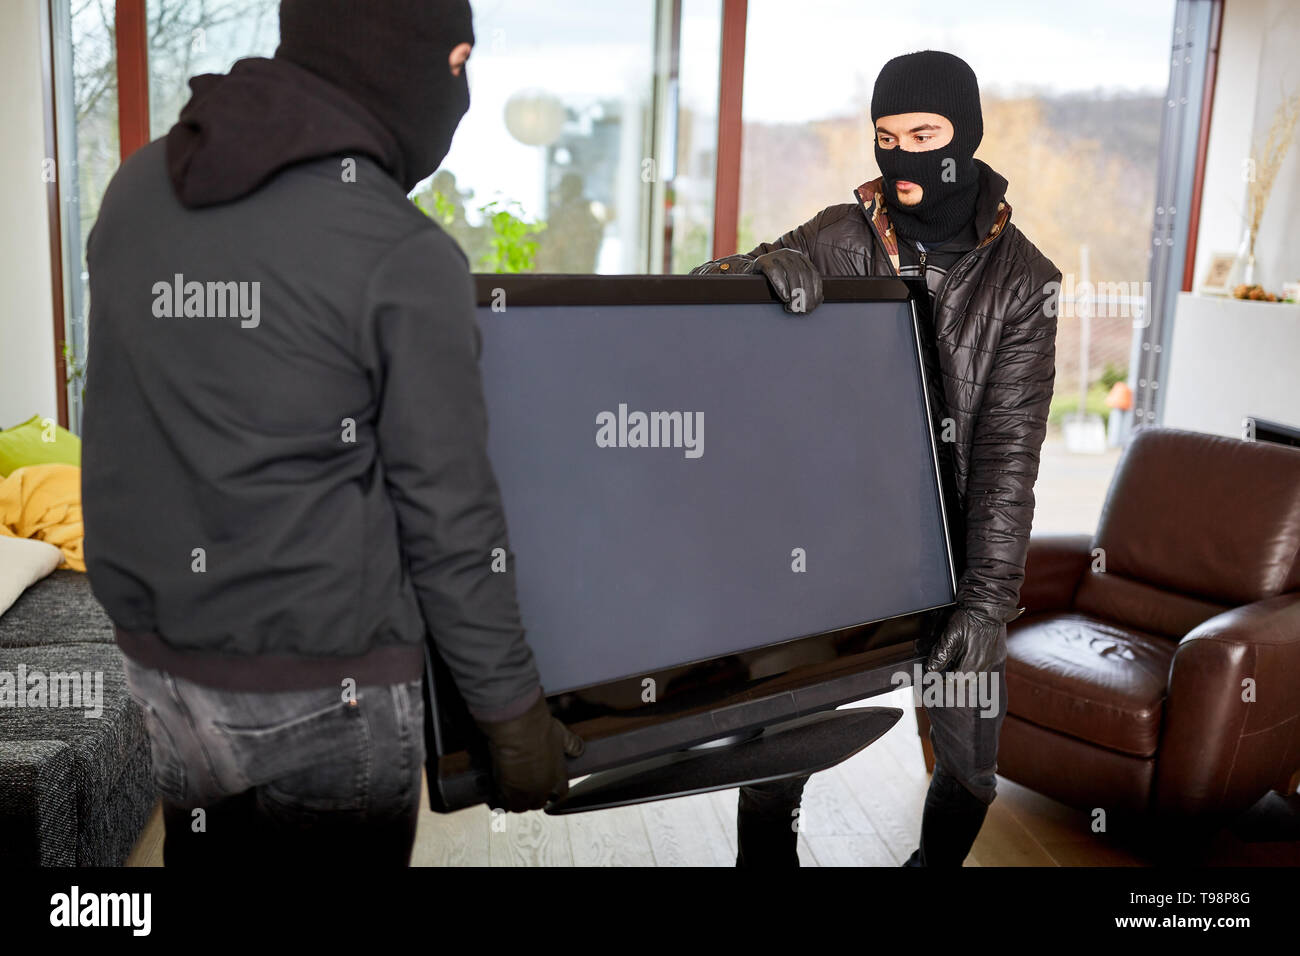 Dos encapuchados ladrones roban televisores como el botín de un salón Foto de stock